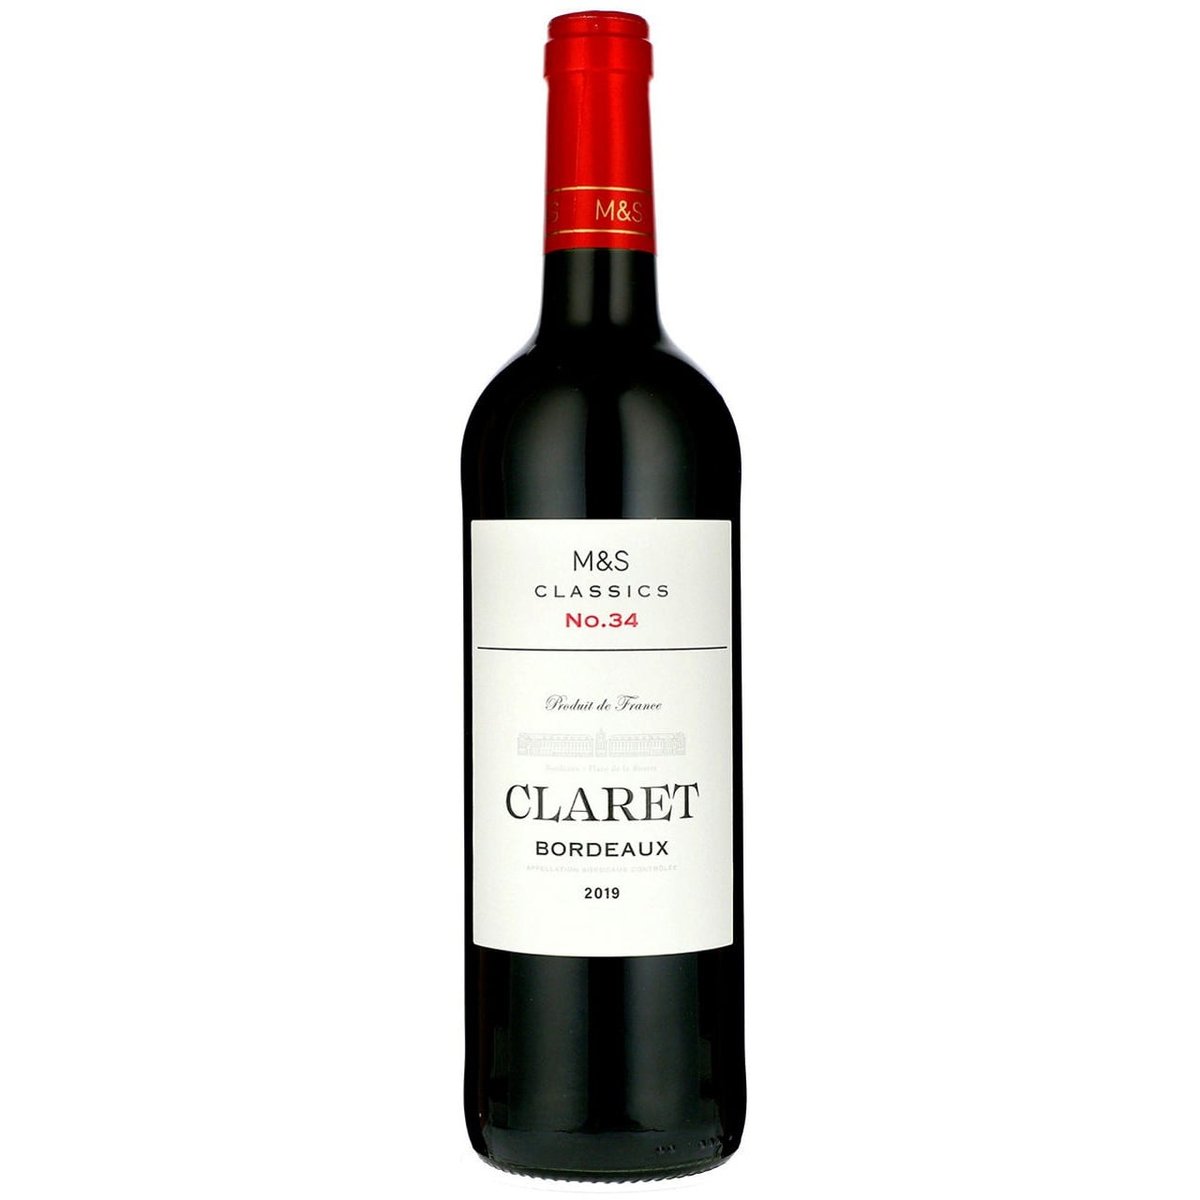 Marks & Spencer Classics Claret Appelation Bordeaux Contrôlée